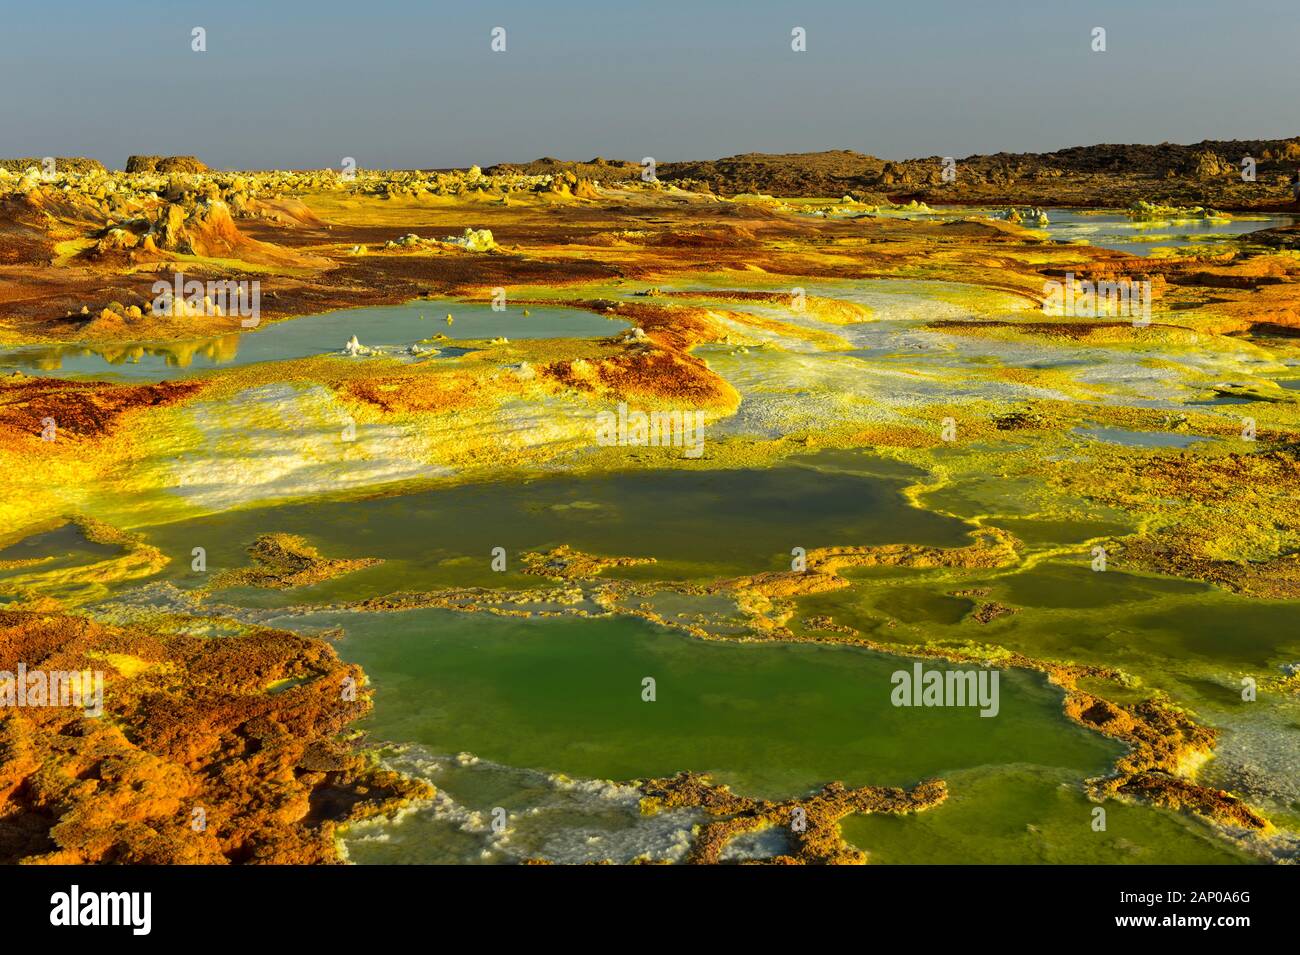 Acid brine Pool mit Schwefelsäure Sedimente, geothermische Feld von Dallol, Danakil Depression, Afar Dreieck, Äthiopien Stockfoto